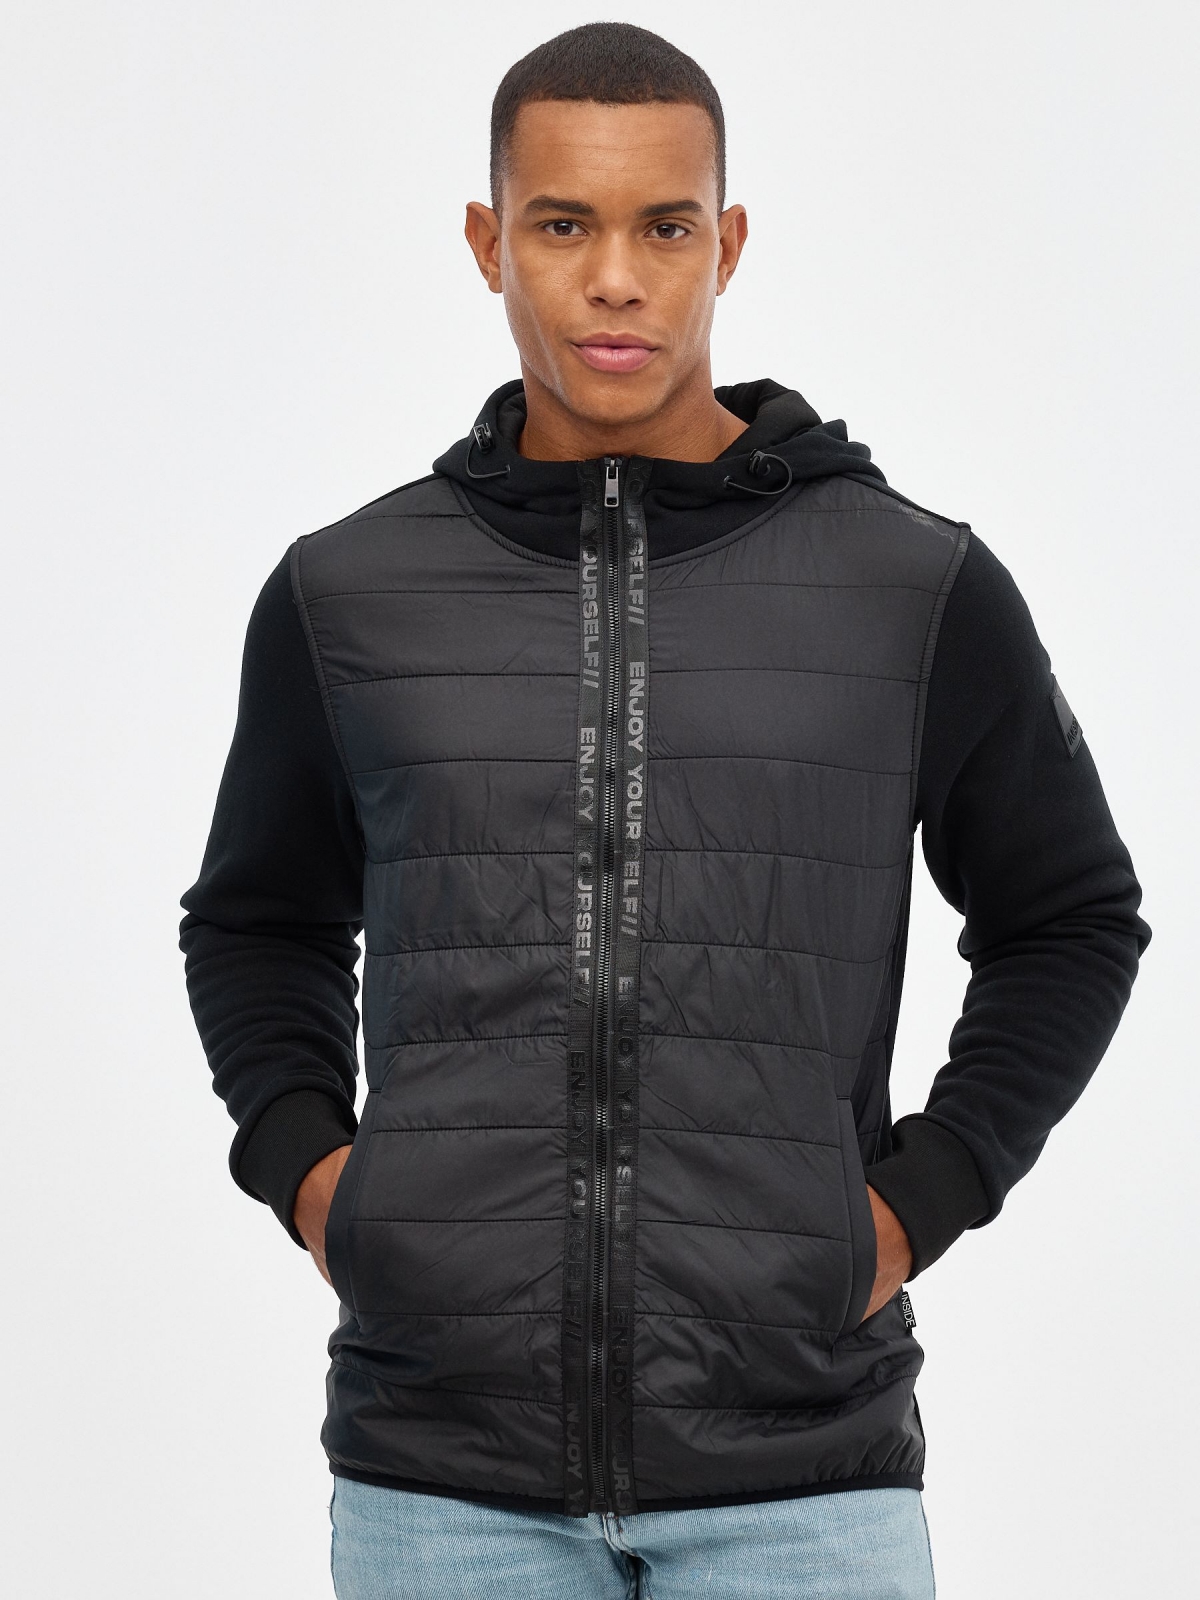 Fleece sweatshirt with zipper black middle front view